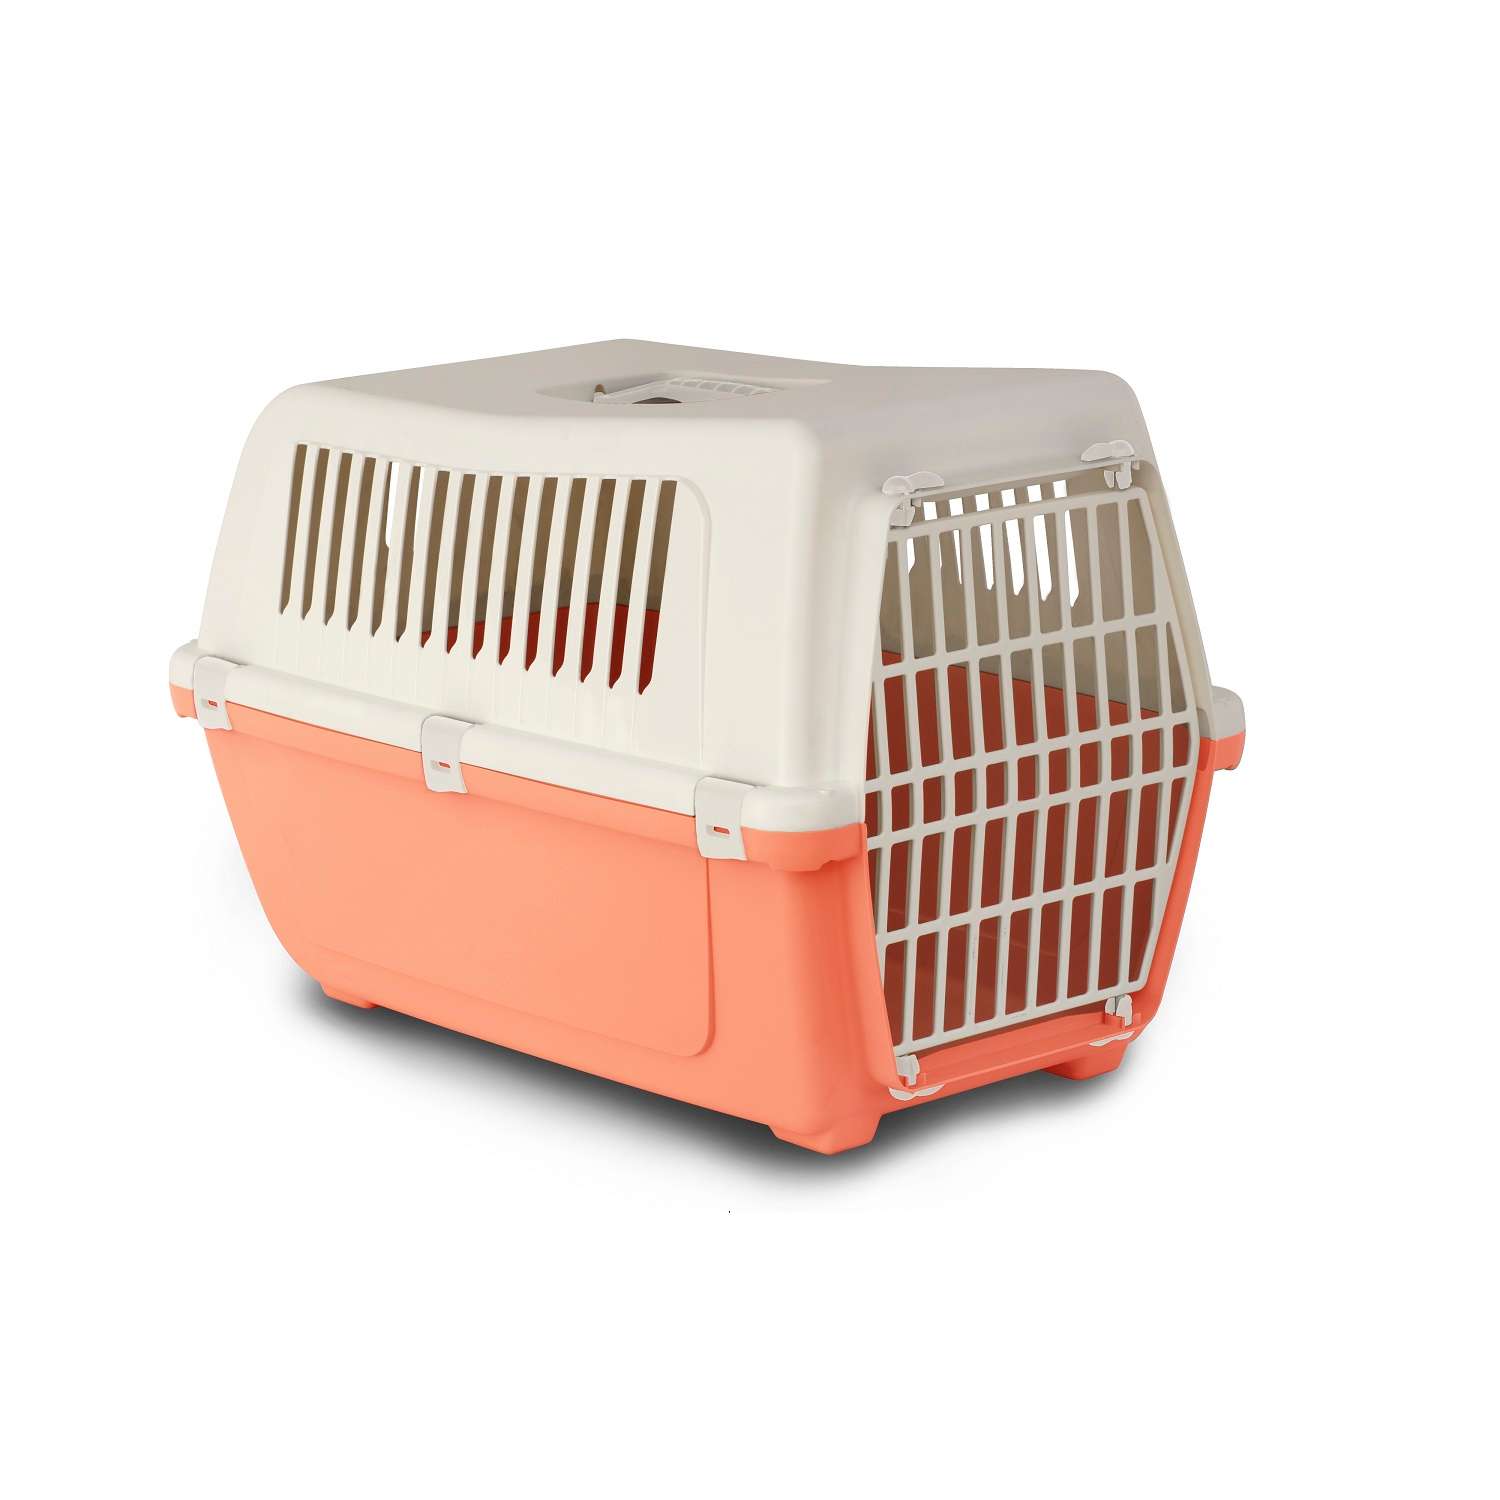 Переноска для животных ХL Lilli Pet контейнер для собак мелких и средних пород транспортный бокс перевозка 59*39*41 см персик - фото 1